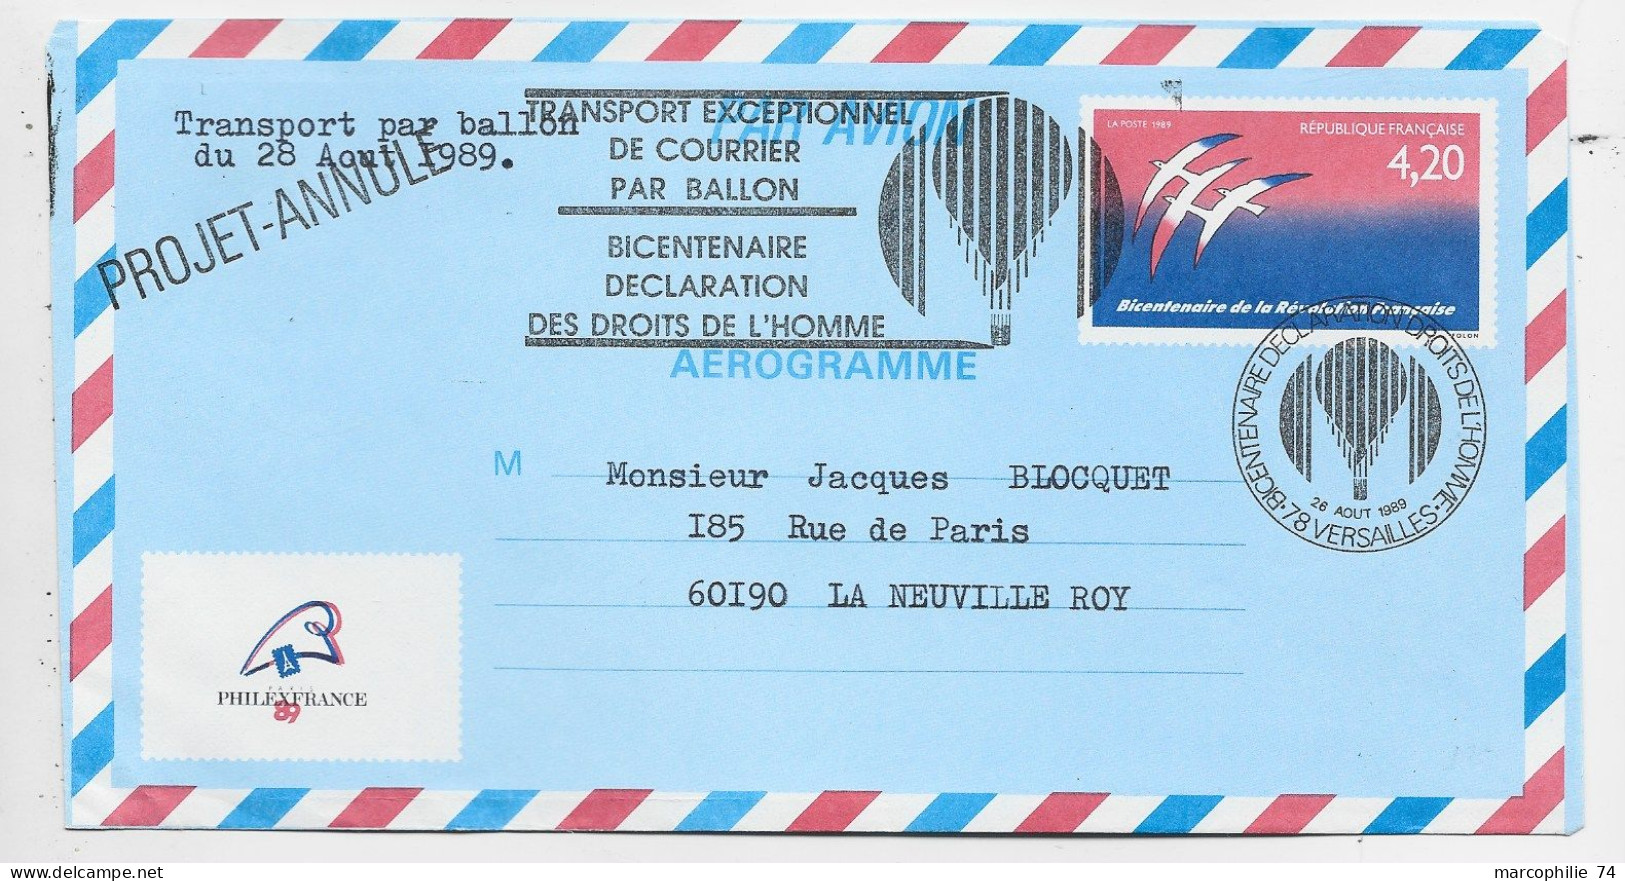 FRANCE AEROGRAMME 4.20 FOLON ENVELOPPE COVER TRANSPORT EXCEPTIONNEL PAR BALLON 1989 PHILEX PROJET ANNULE - Luchtpostbladen